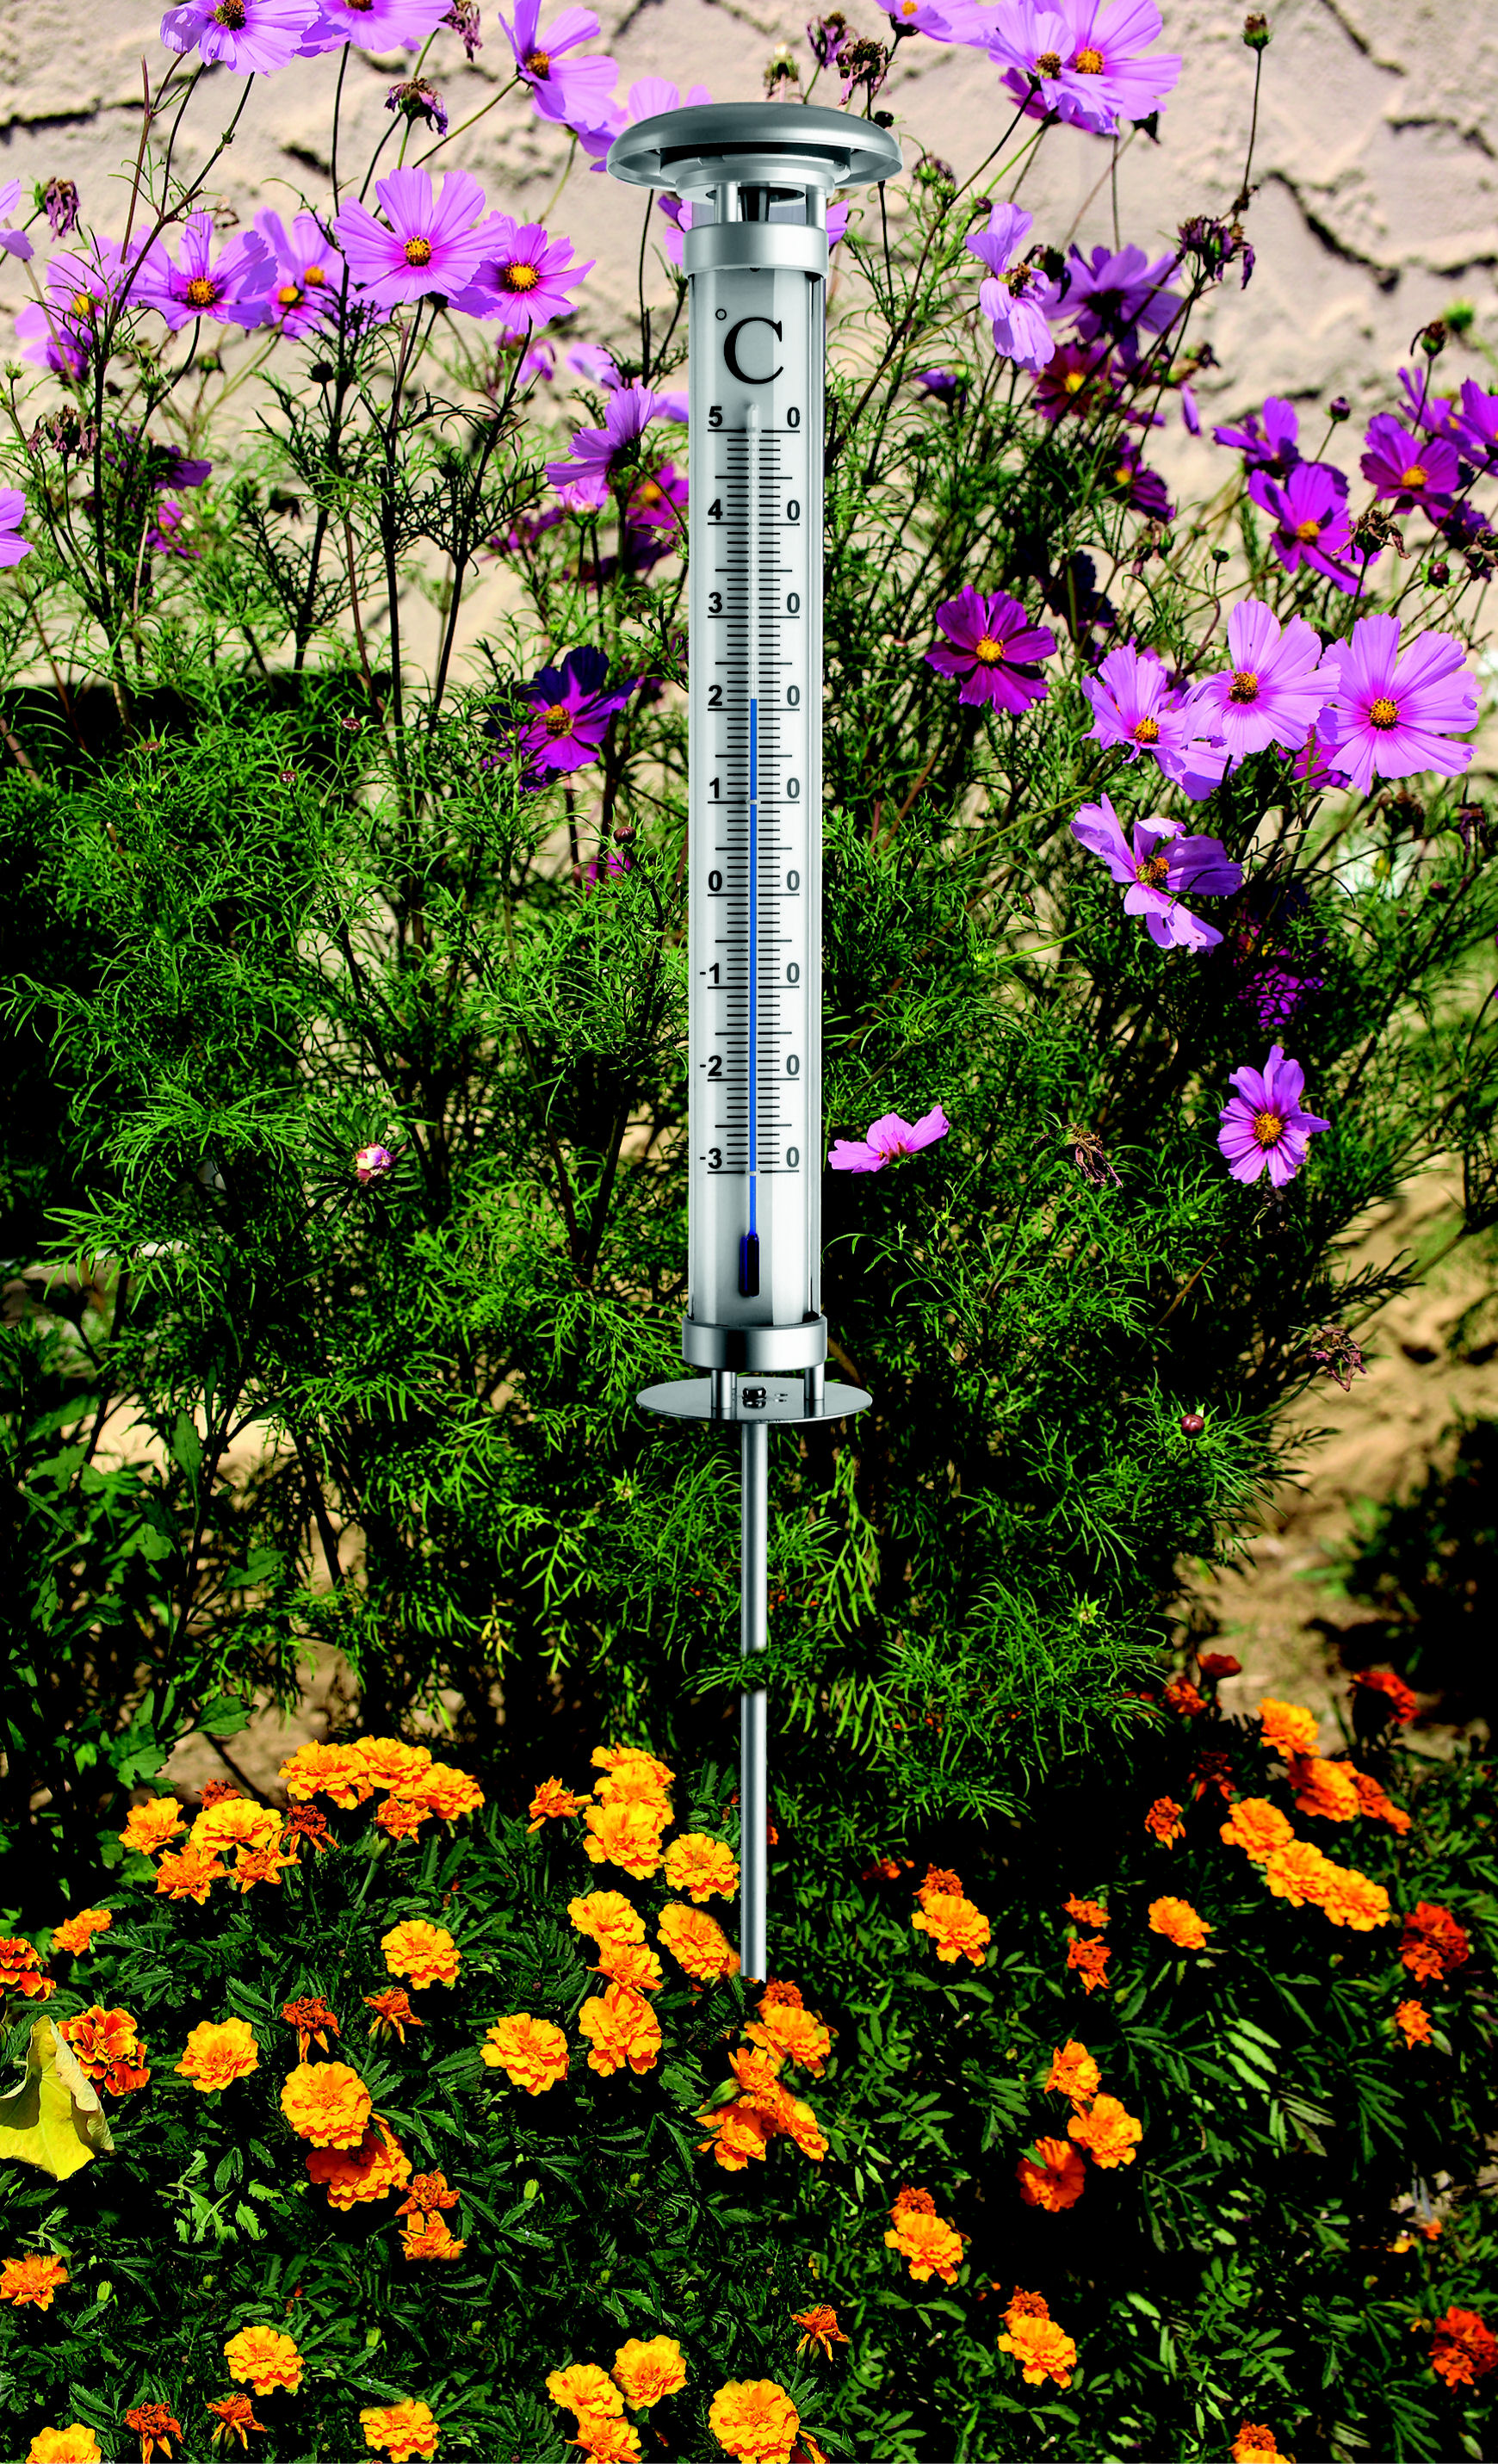 Thermomètre extérieur Solino